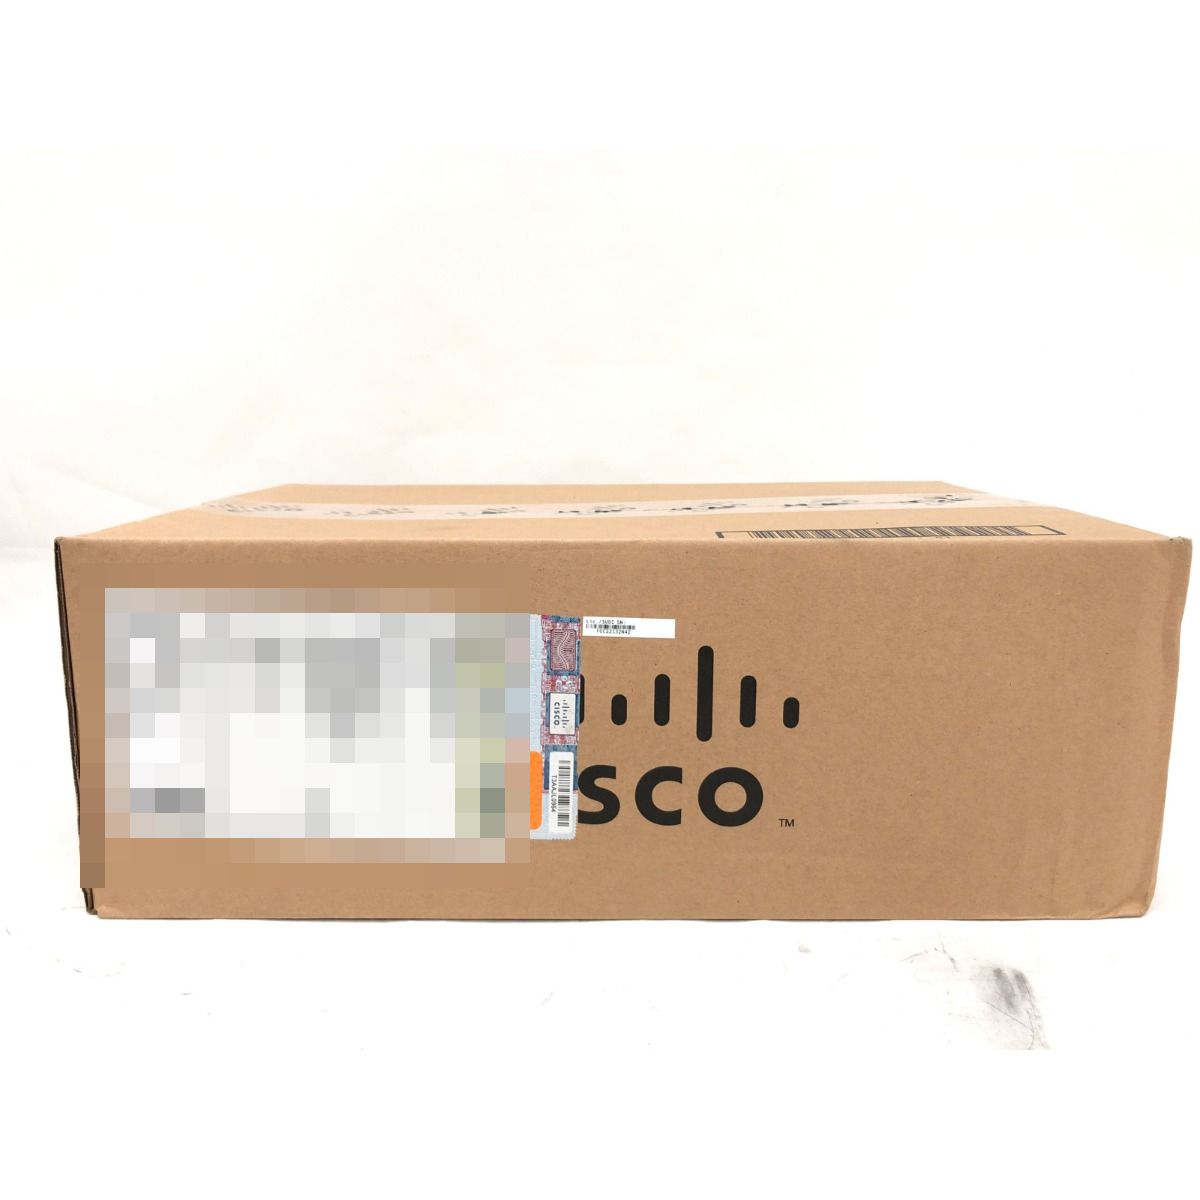 ▼▼【中古】Cisco シスコ サービス統合型ルーター 800Mシリーズ C841M-4X-JSEC/K9 Nランク